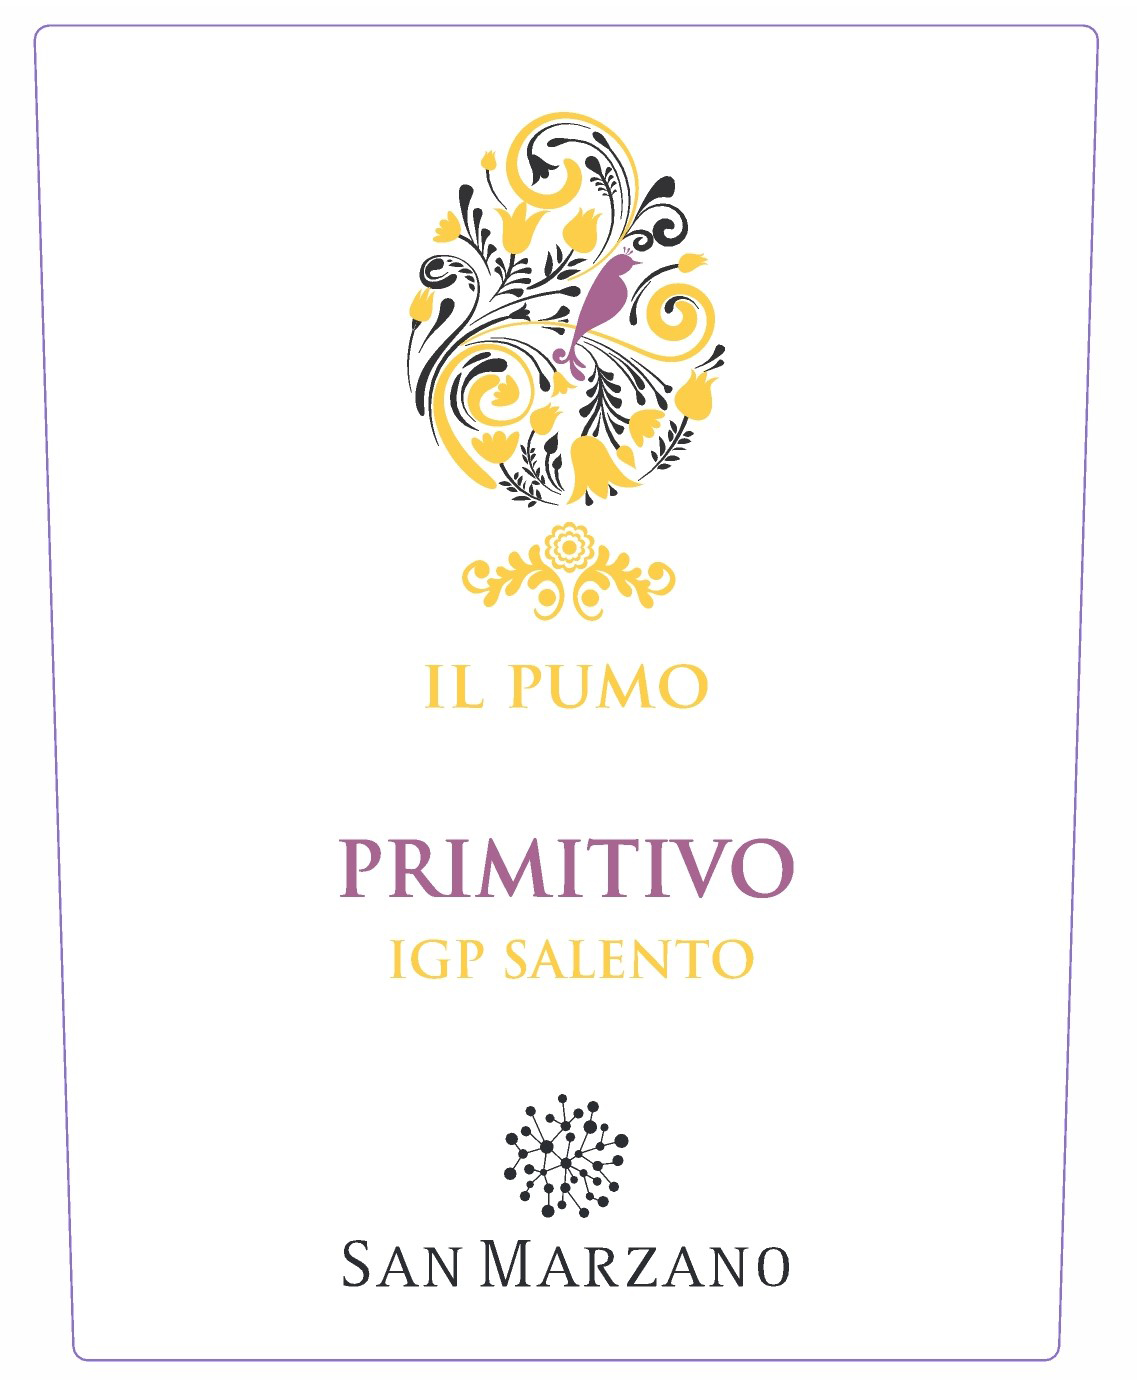 San Marzano - Il Pumo Primitivo label